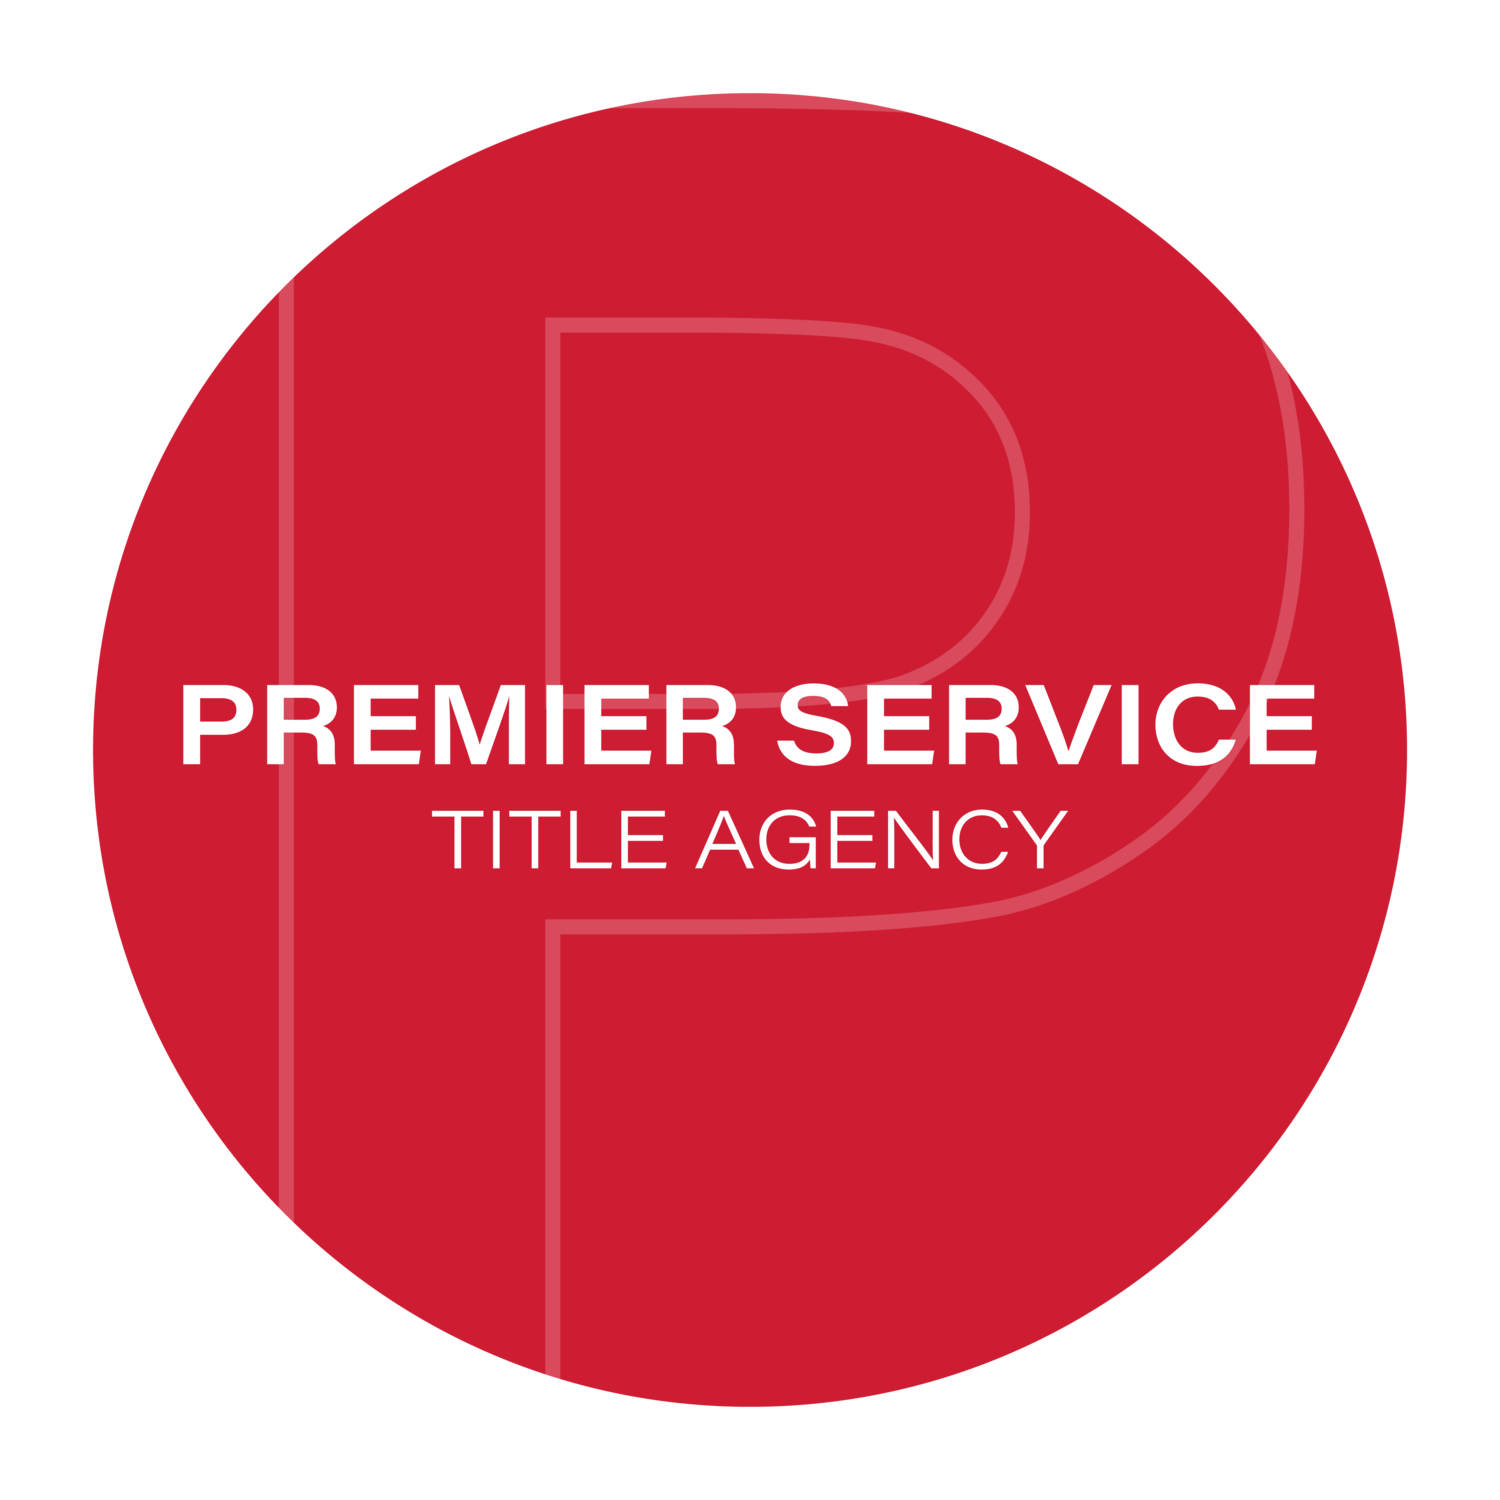 Premier Service Title